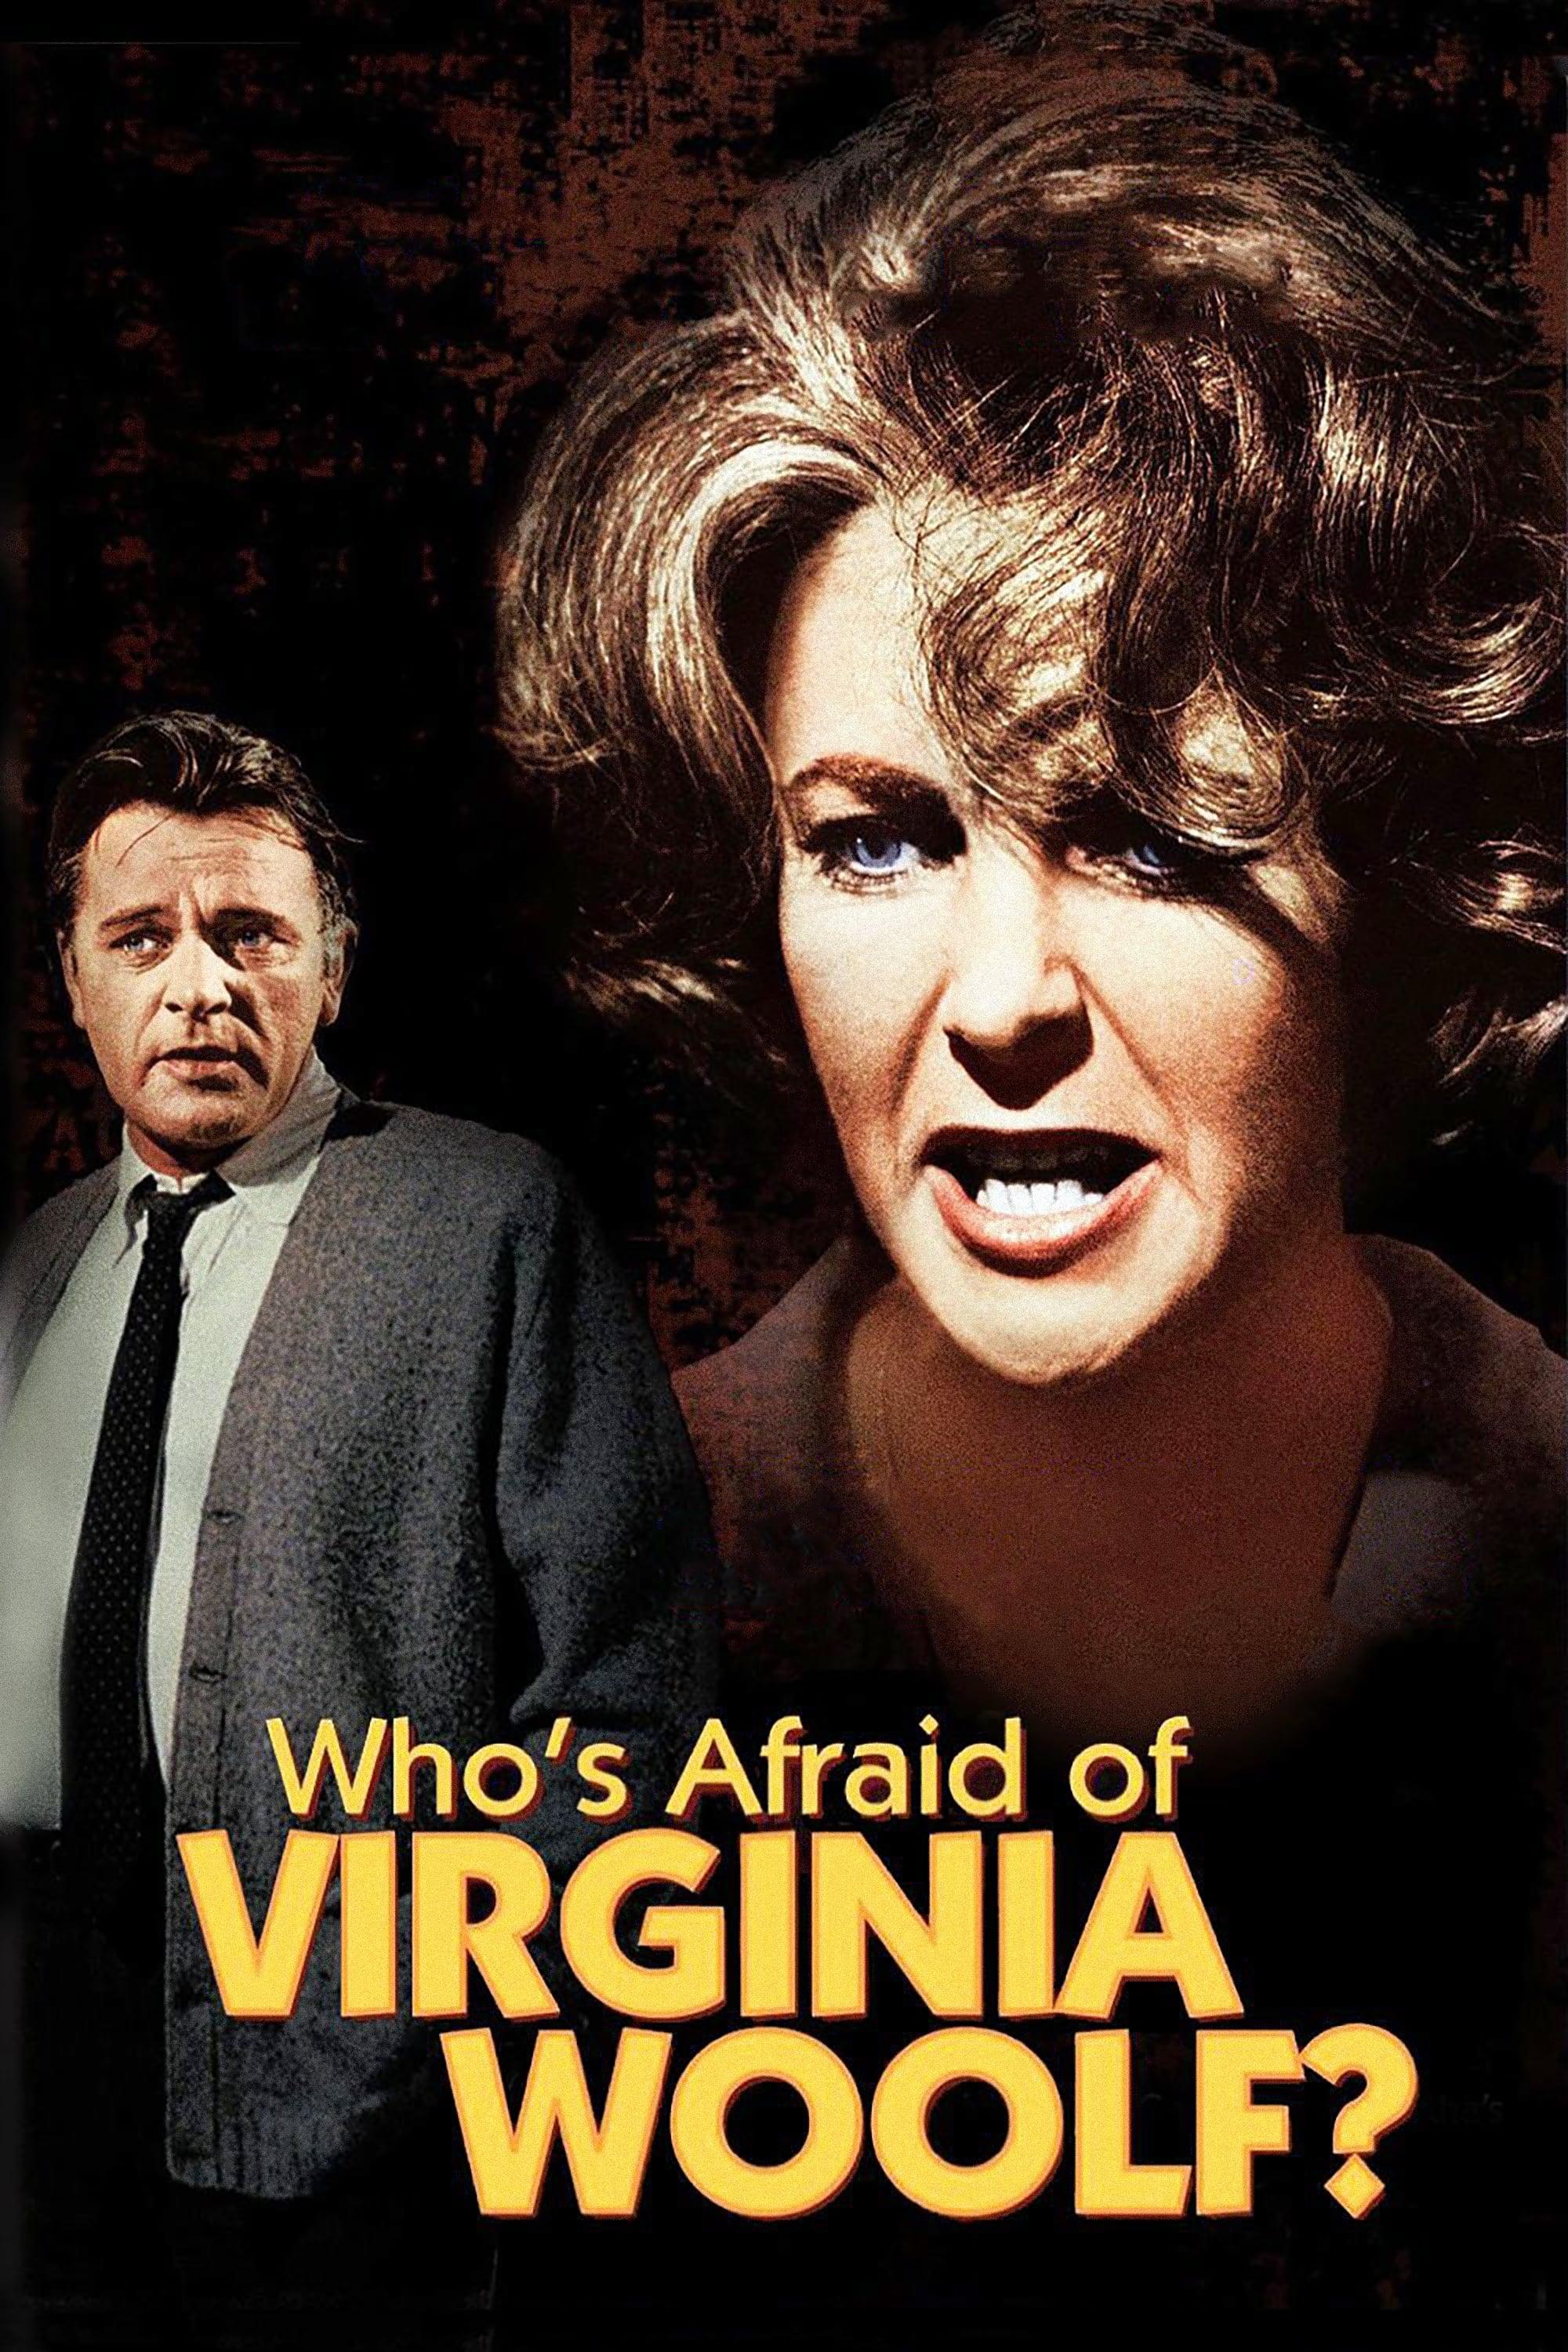 Wer hat Angst vor Virginia Woolf? poster